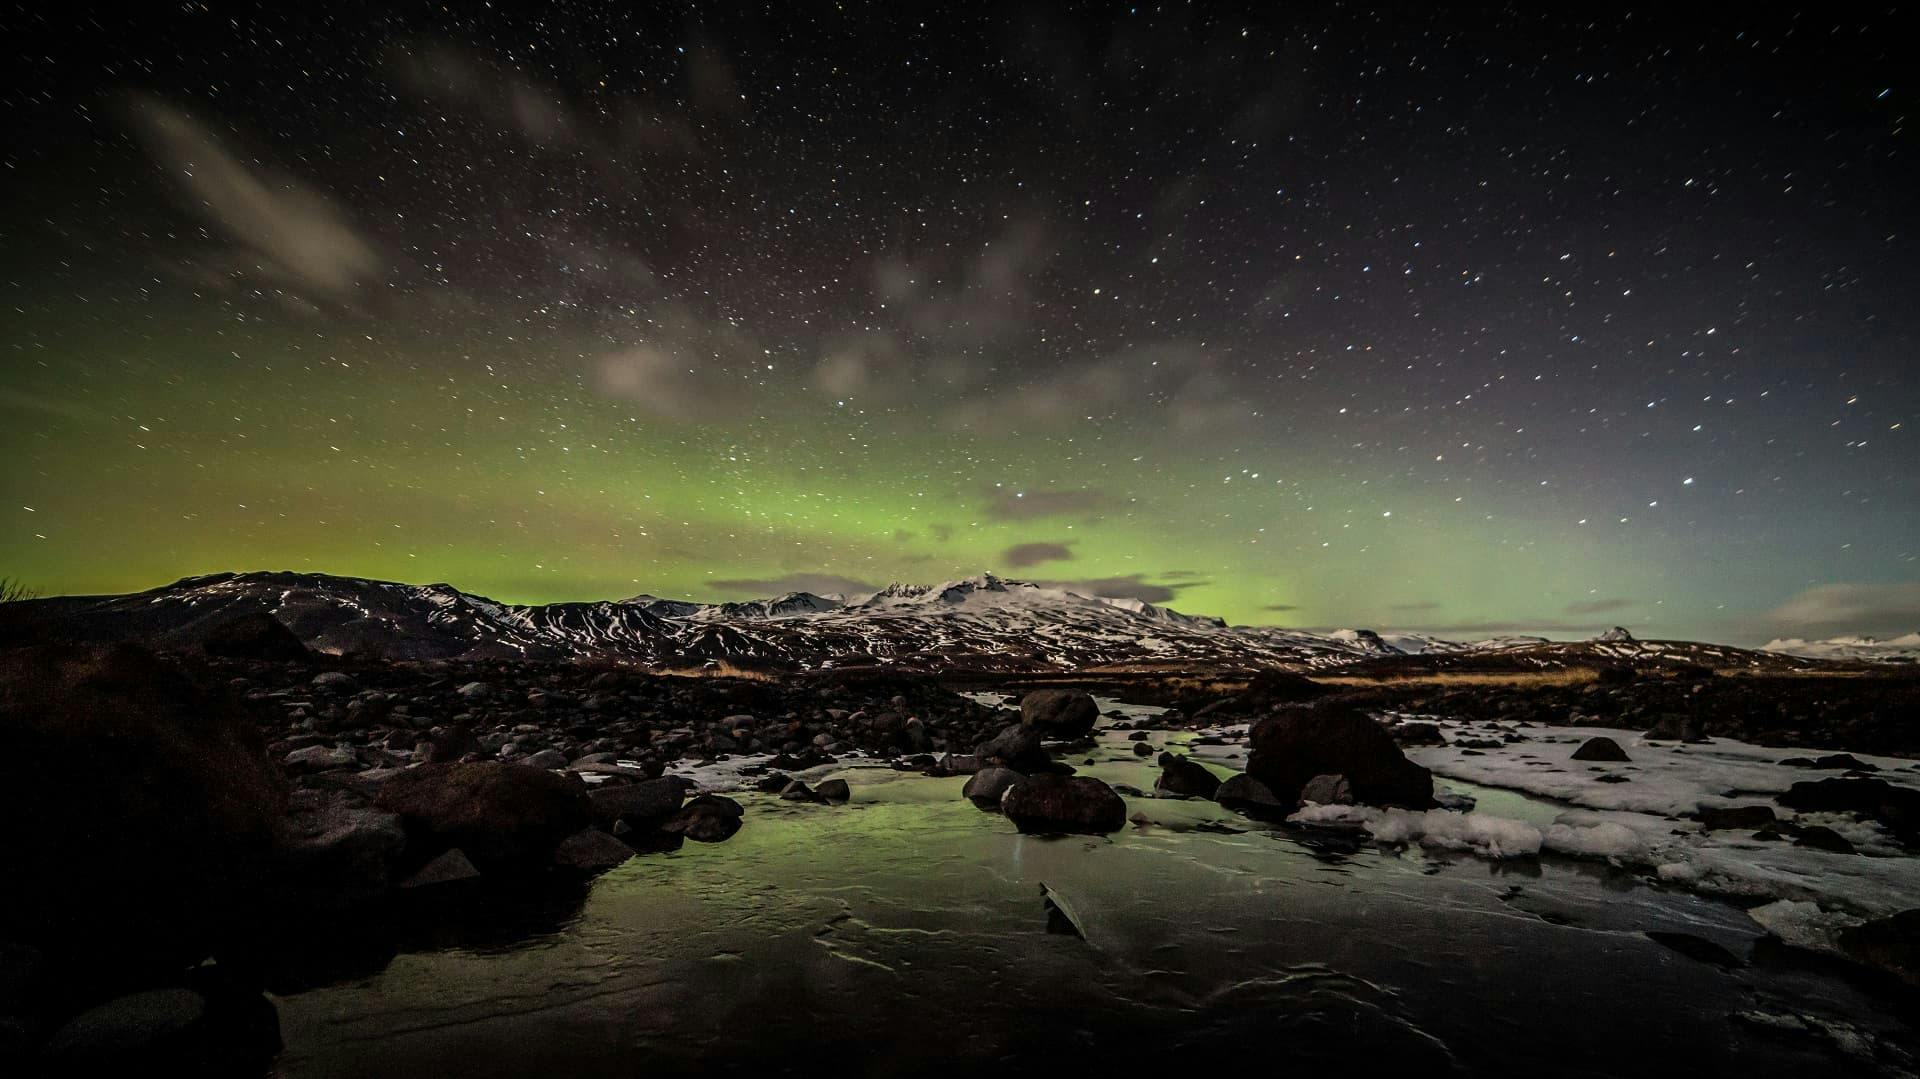 Northern Lights dancing over Þórsmörk Valley.